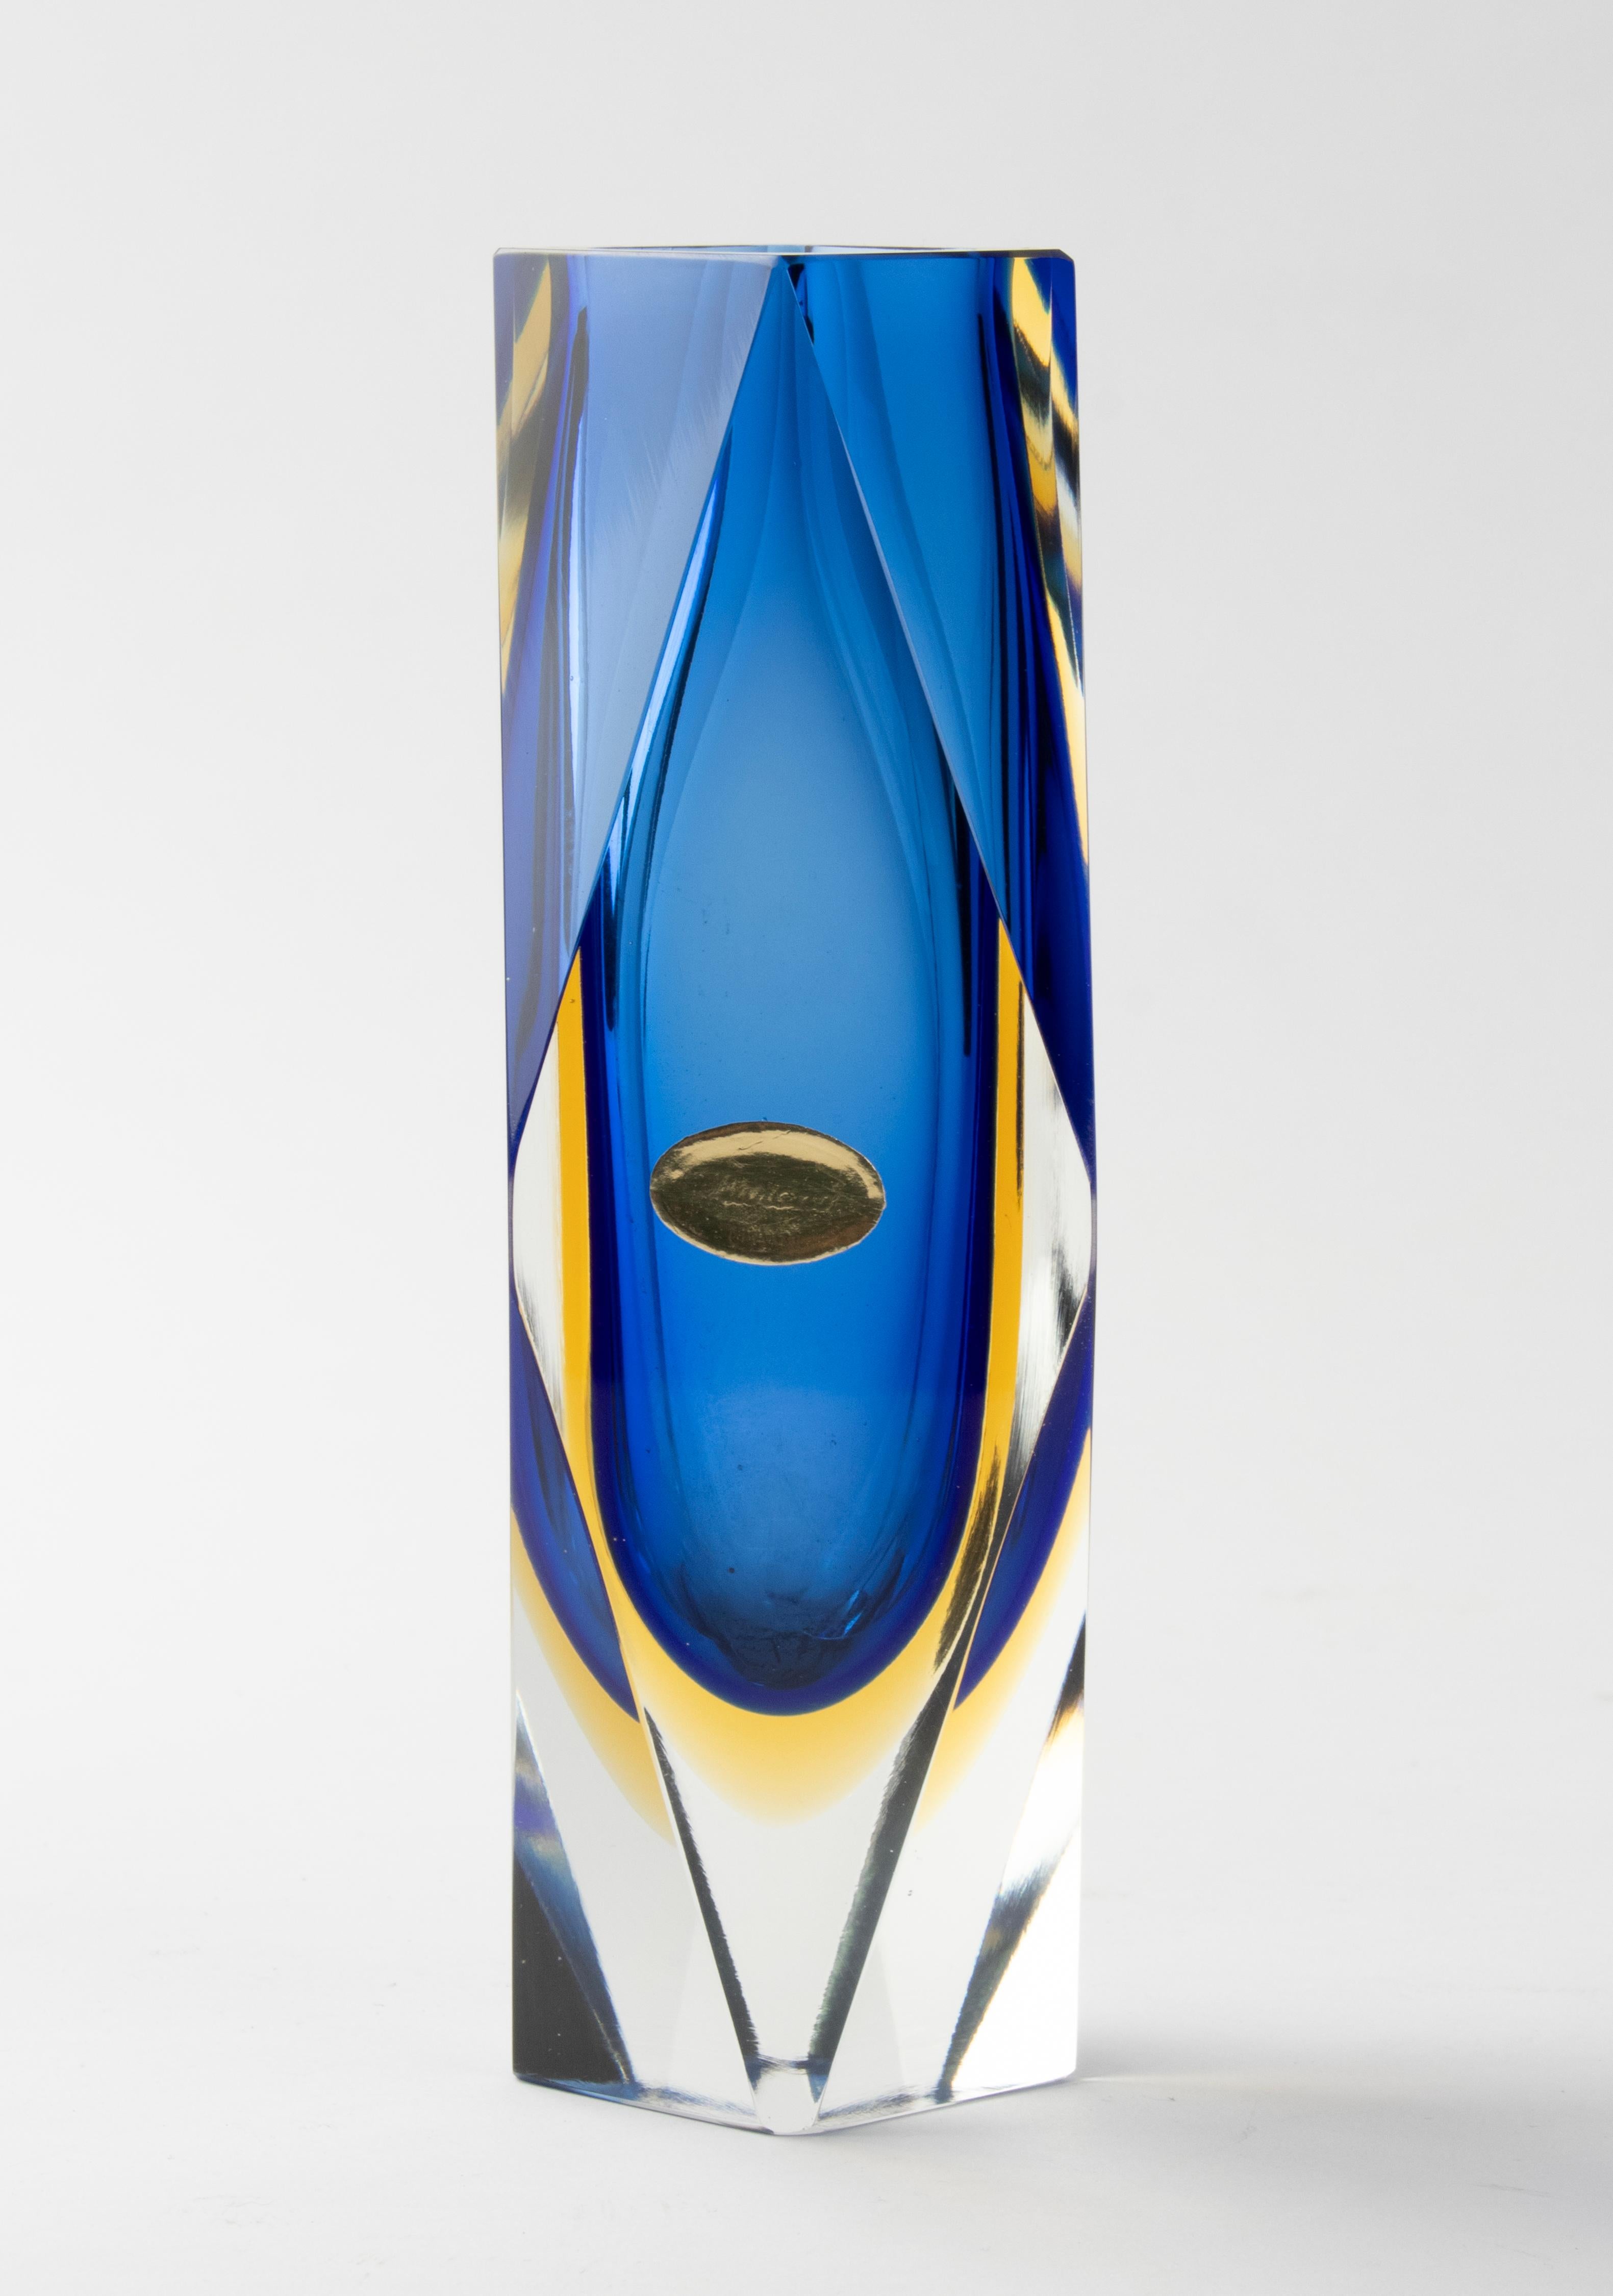 Eine schöne Sommerso-Vase aus Kunstglas, die dem italienischen Designer Flavio Poli zugeschrieben wird. 
Die Vase ist in gutem Zustand. Schöne Farben und Qualität. 

Abmessungen: 9 x 9 cm und 20 cm hoch. 
Kostenloser Versand weltweit